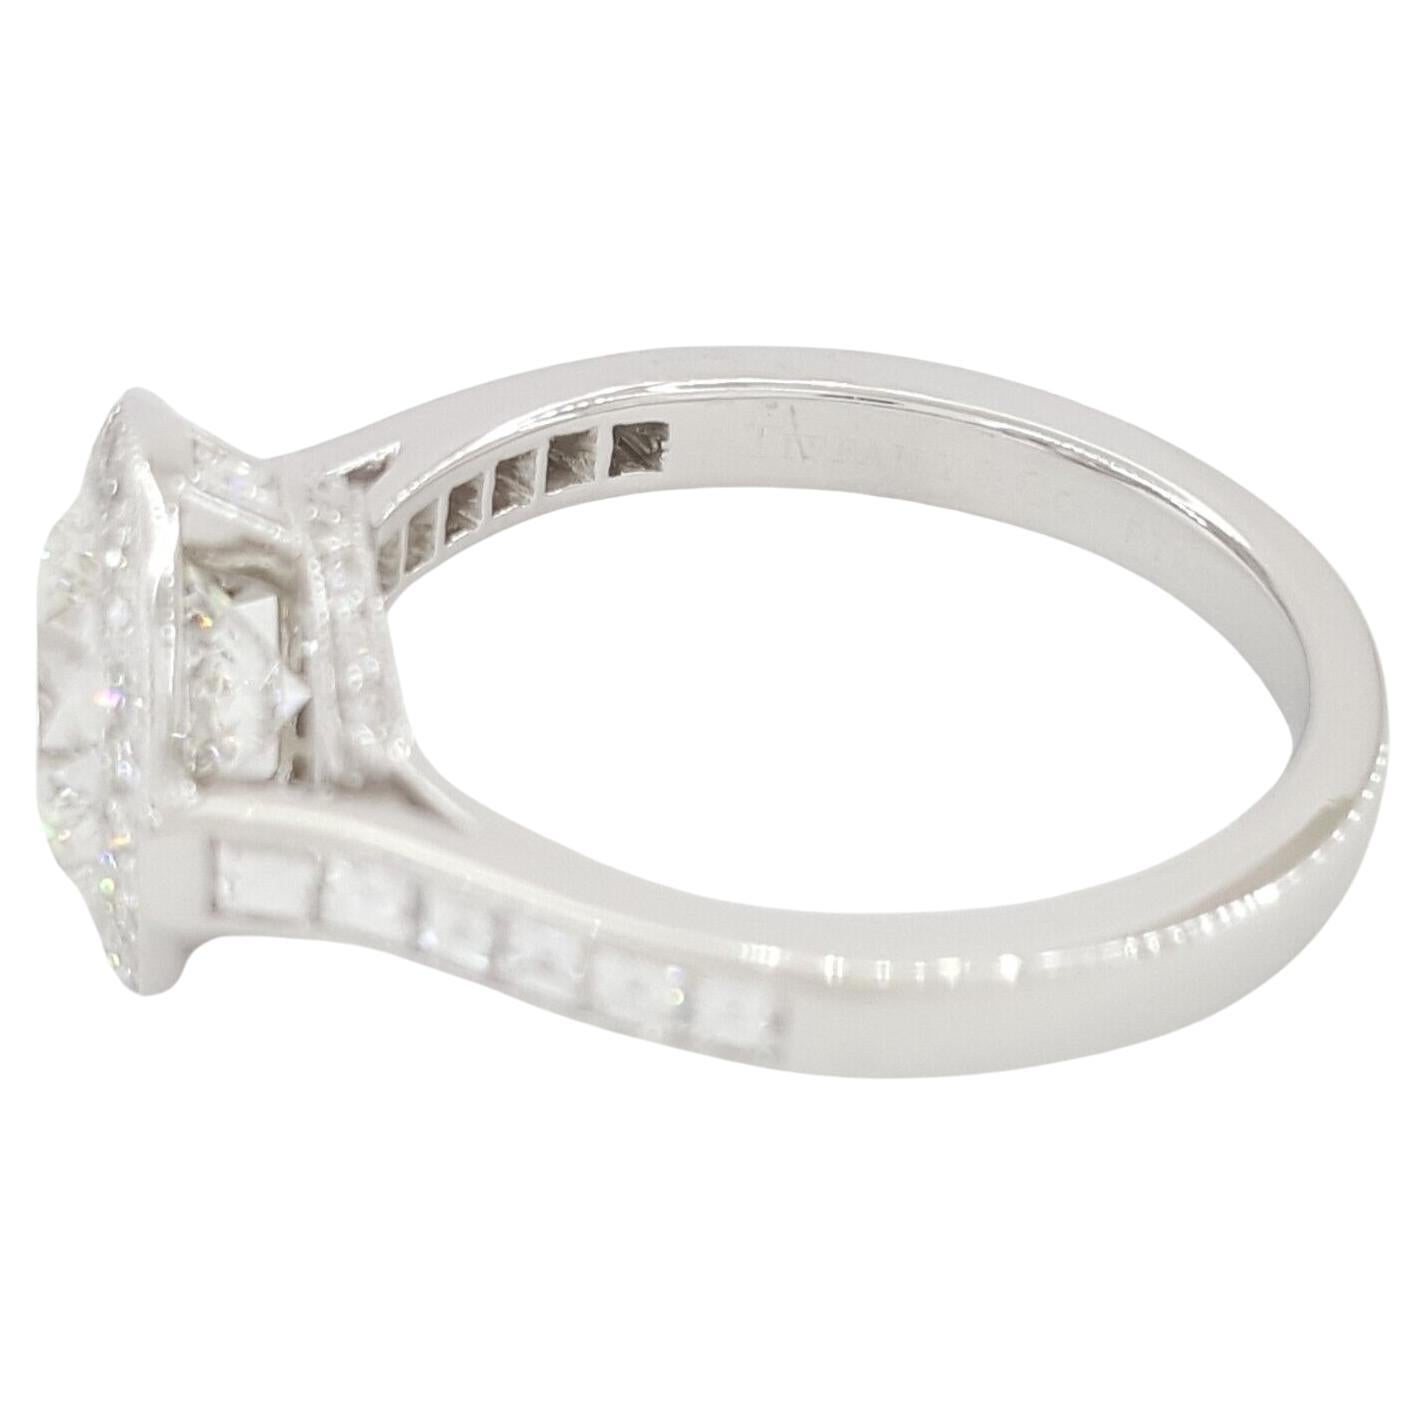 Exquis symbole de l'amour éternel : Le bracelet Tiffany & Co. Bague de fiançailles halo en platine sertie d'un diamant rond de 2,27 ct à couper le souffle.

Fabriquée avec précision et élégance, cette bague affiche un poids total de 5,7 grammes et